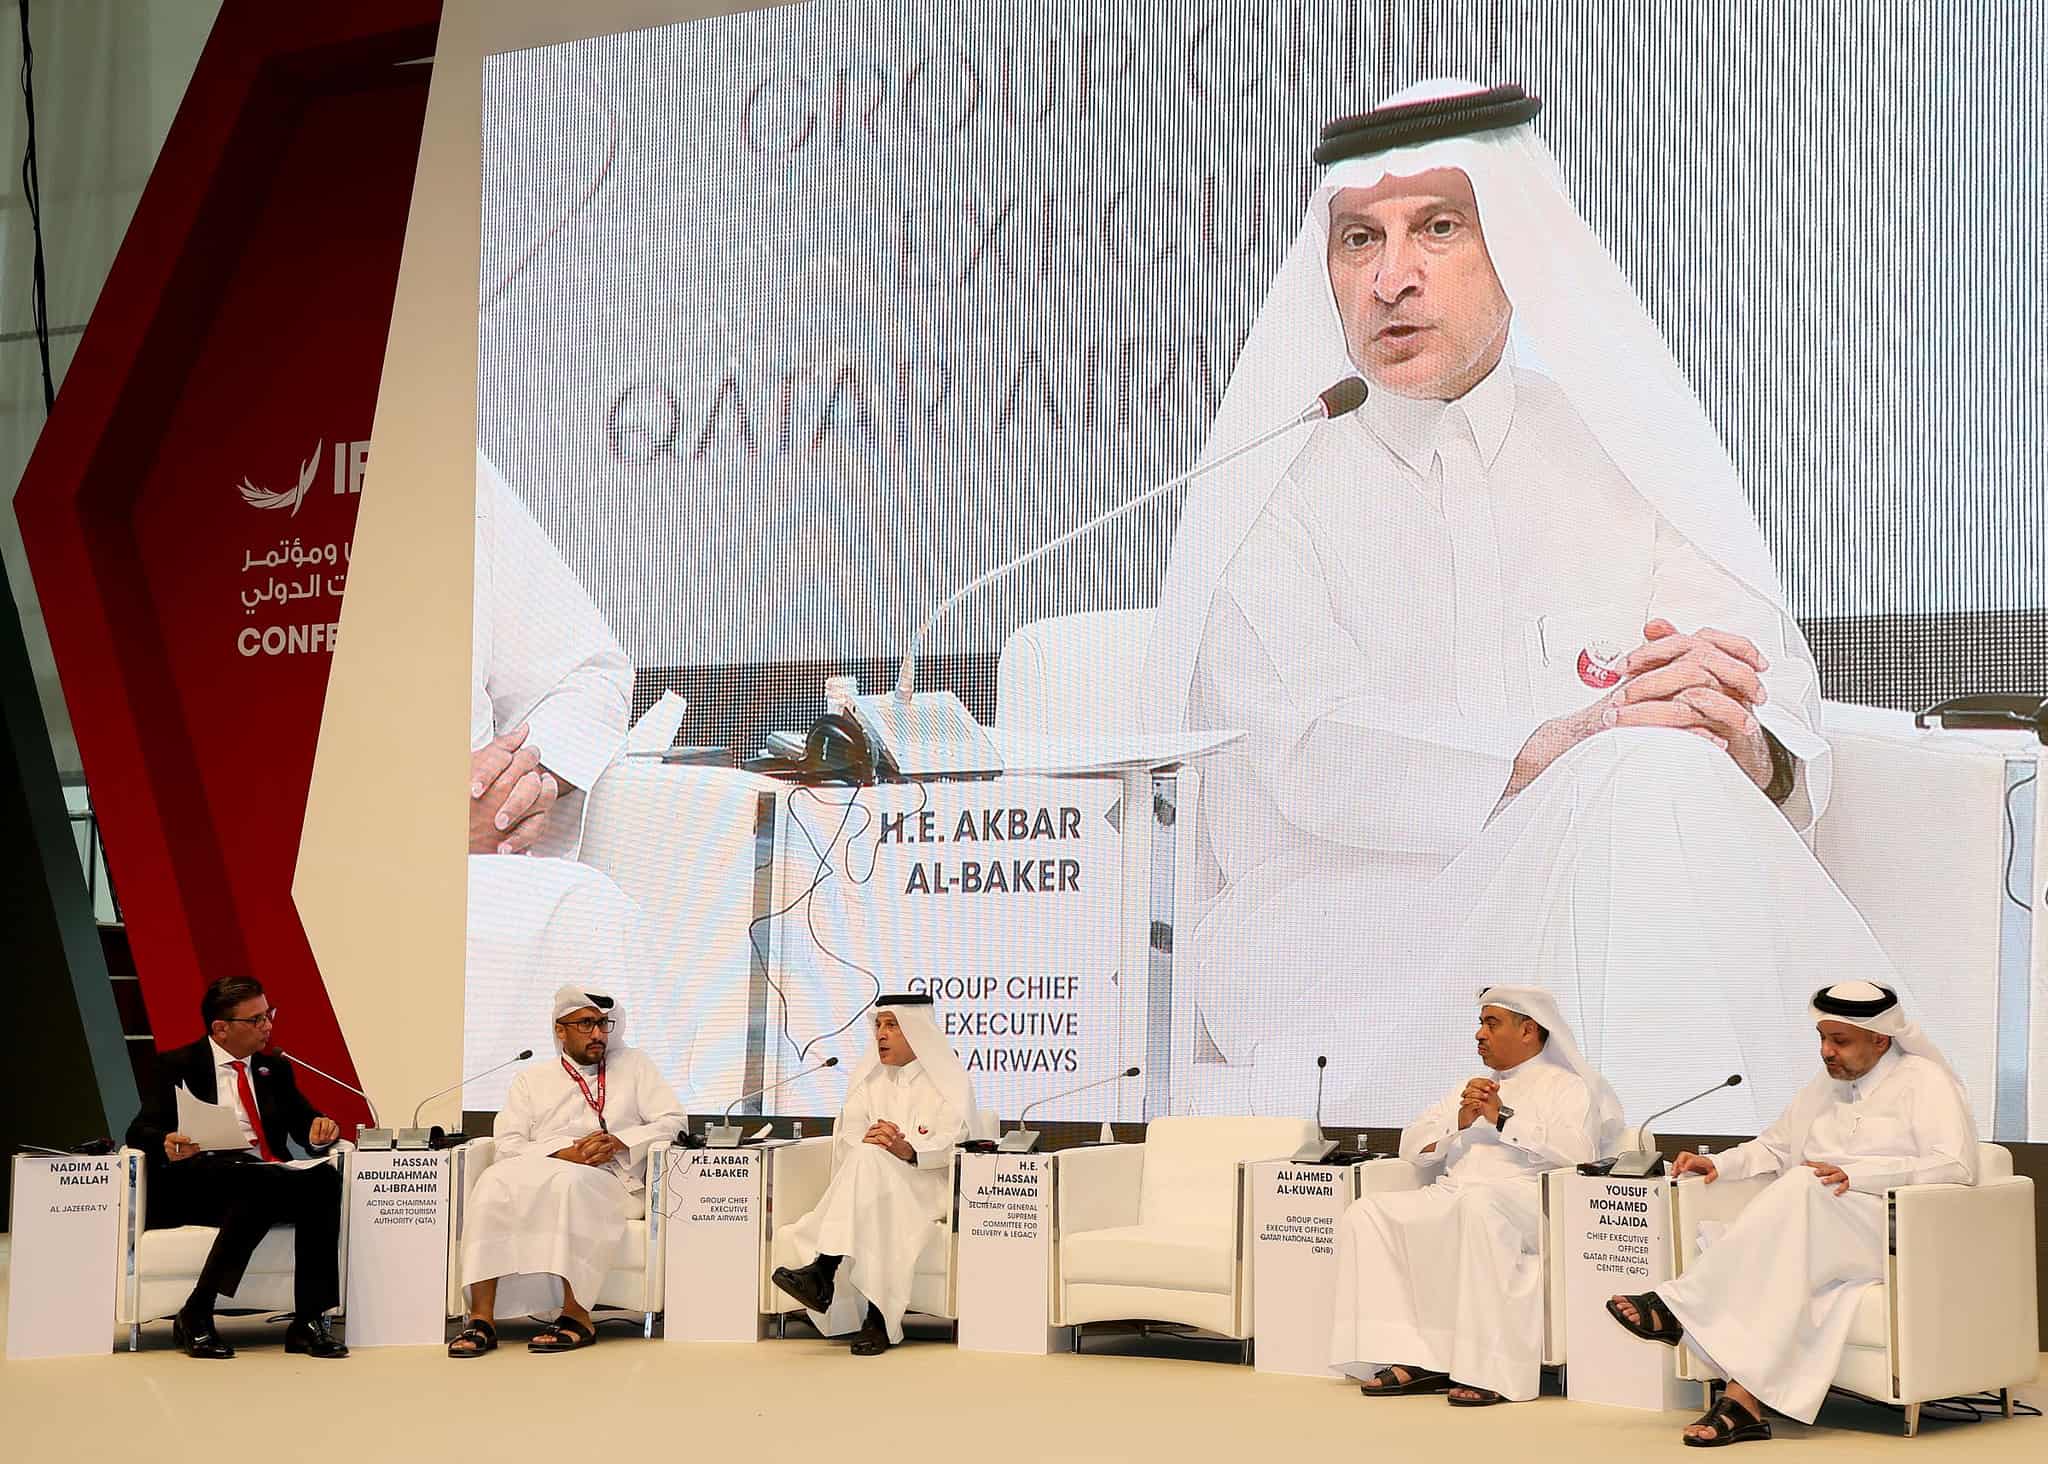 Qatar Airways Cargo played key role following blockade: al-Baker